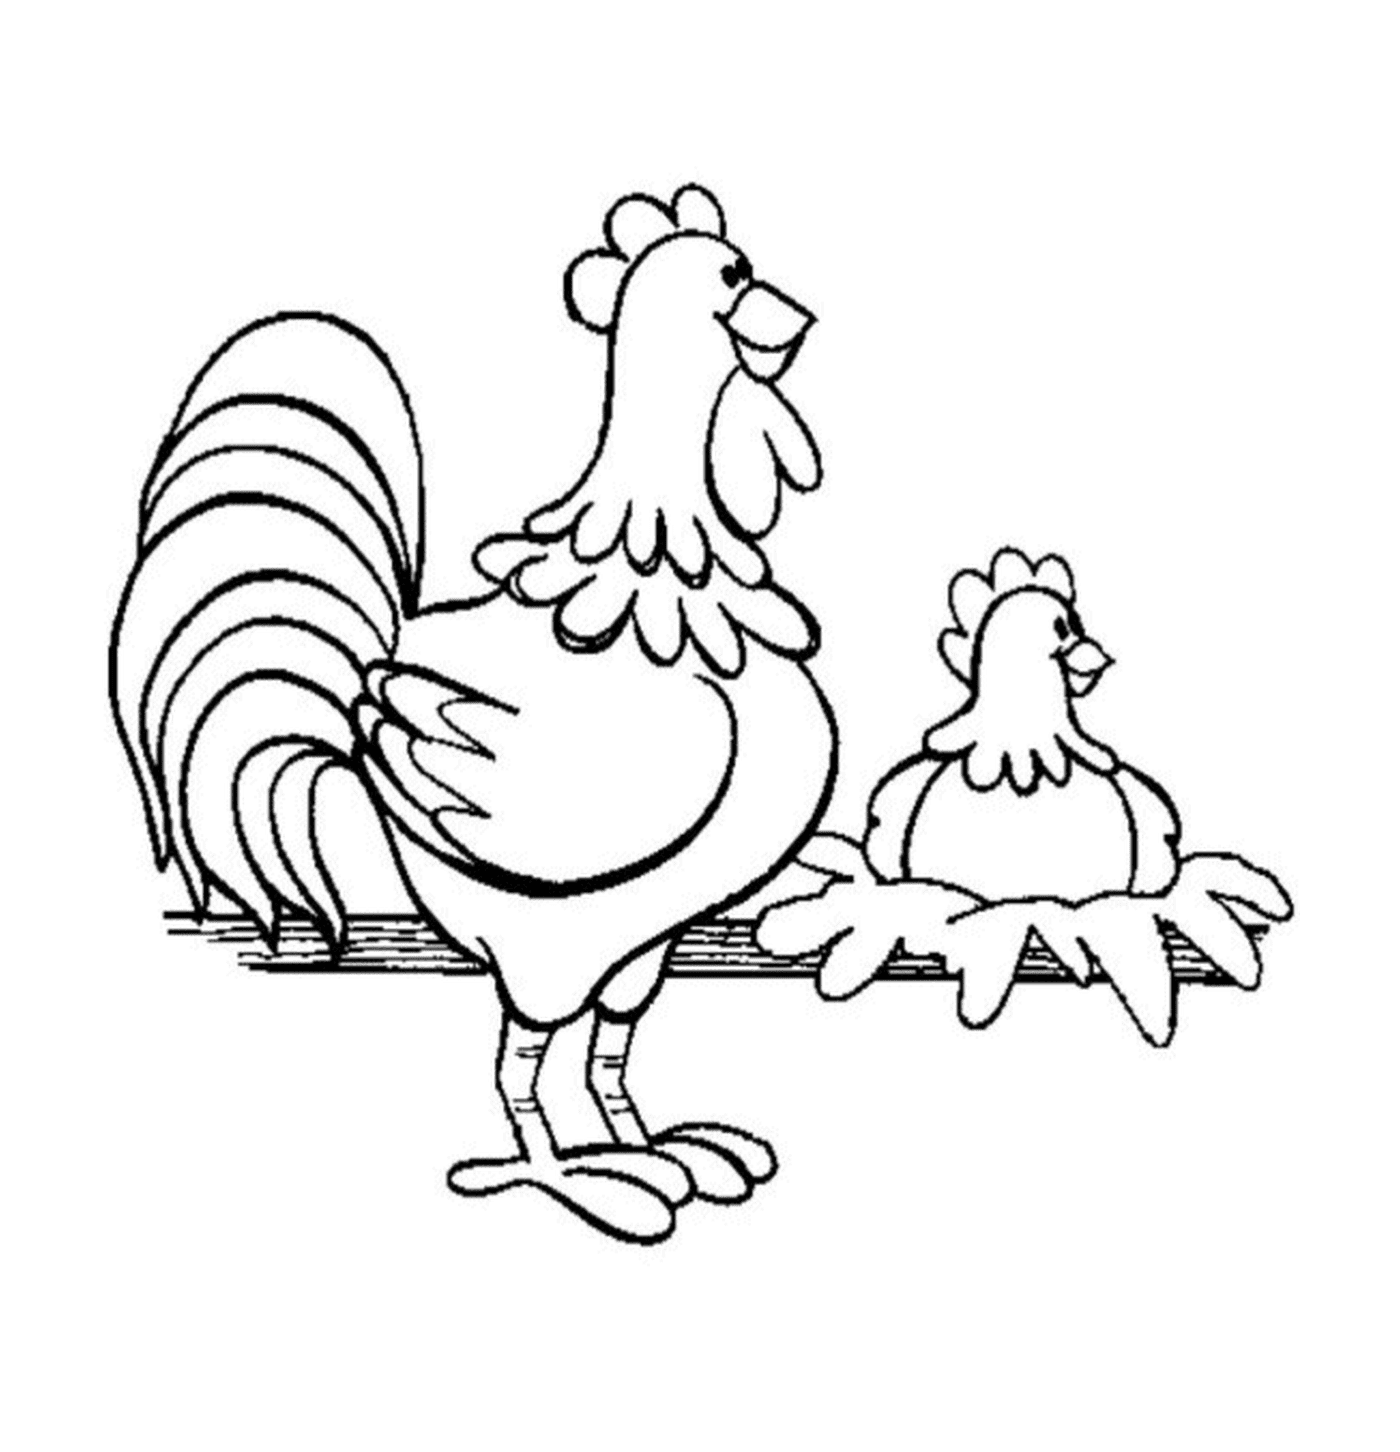  اثنان من الدجاجتين في حالة سياج 